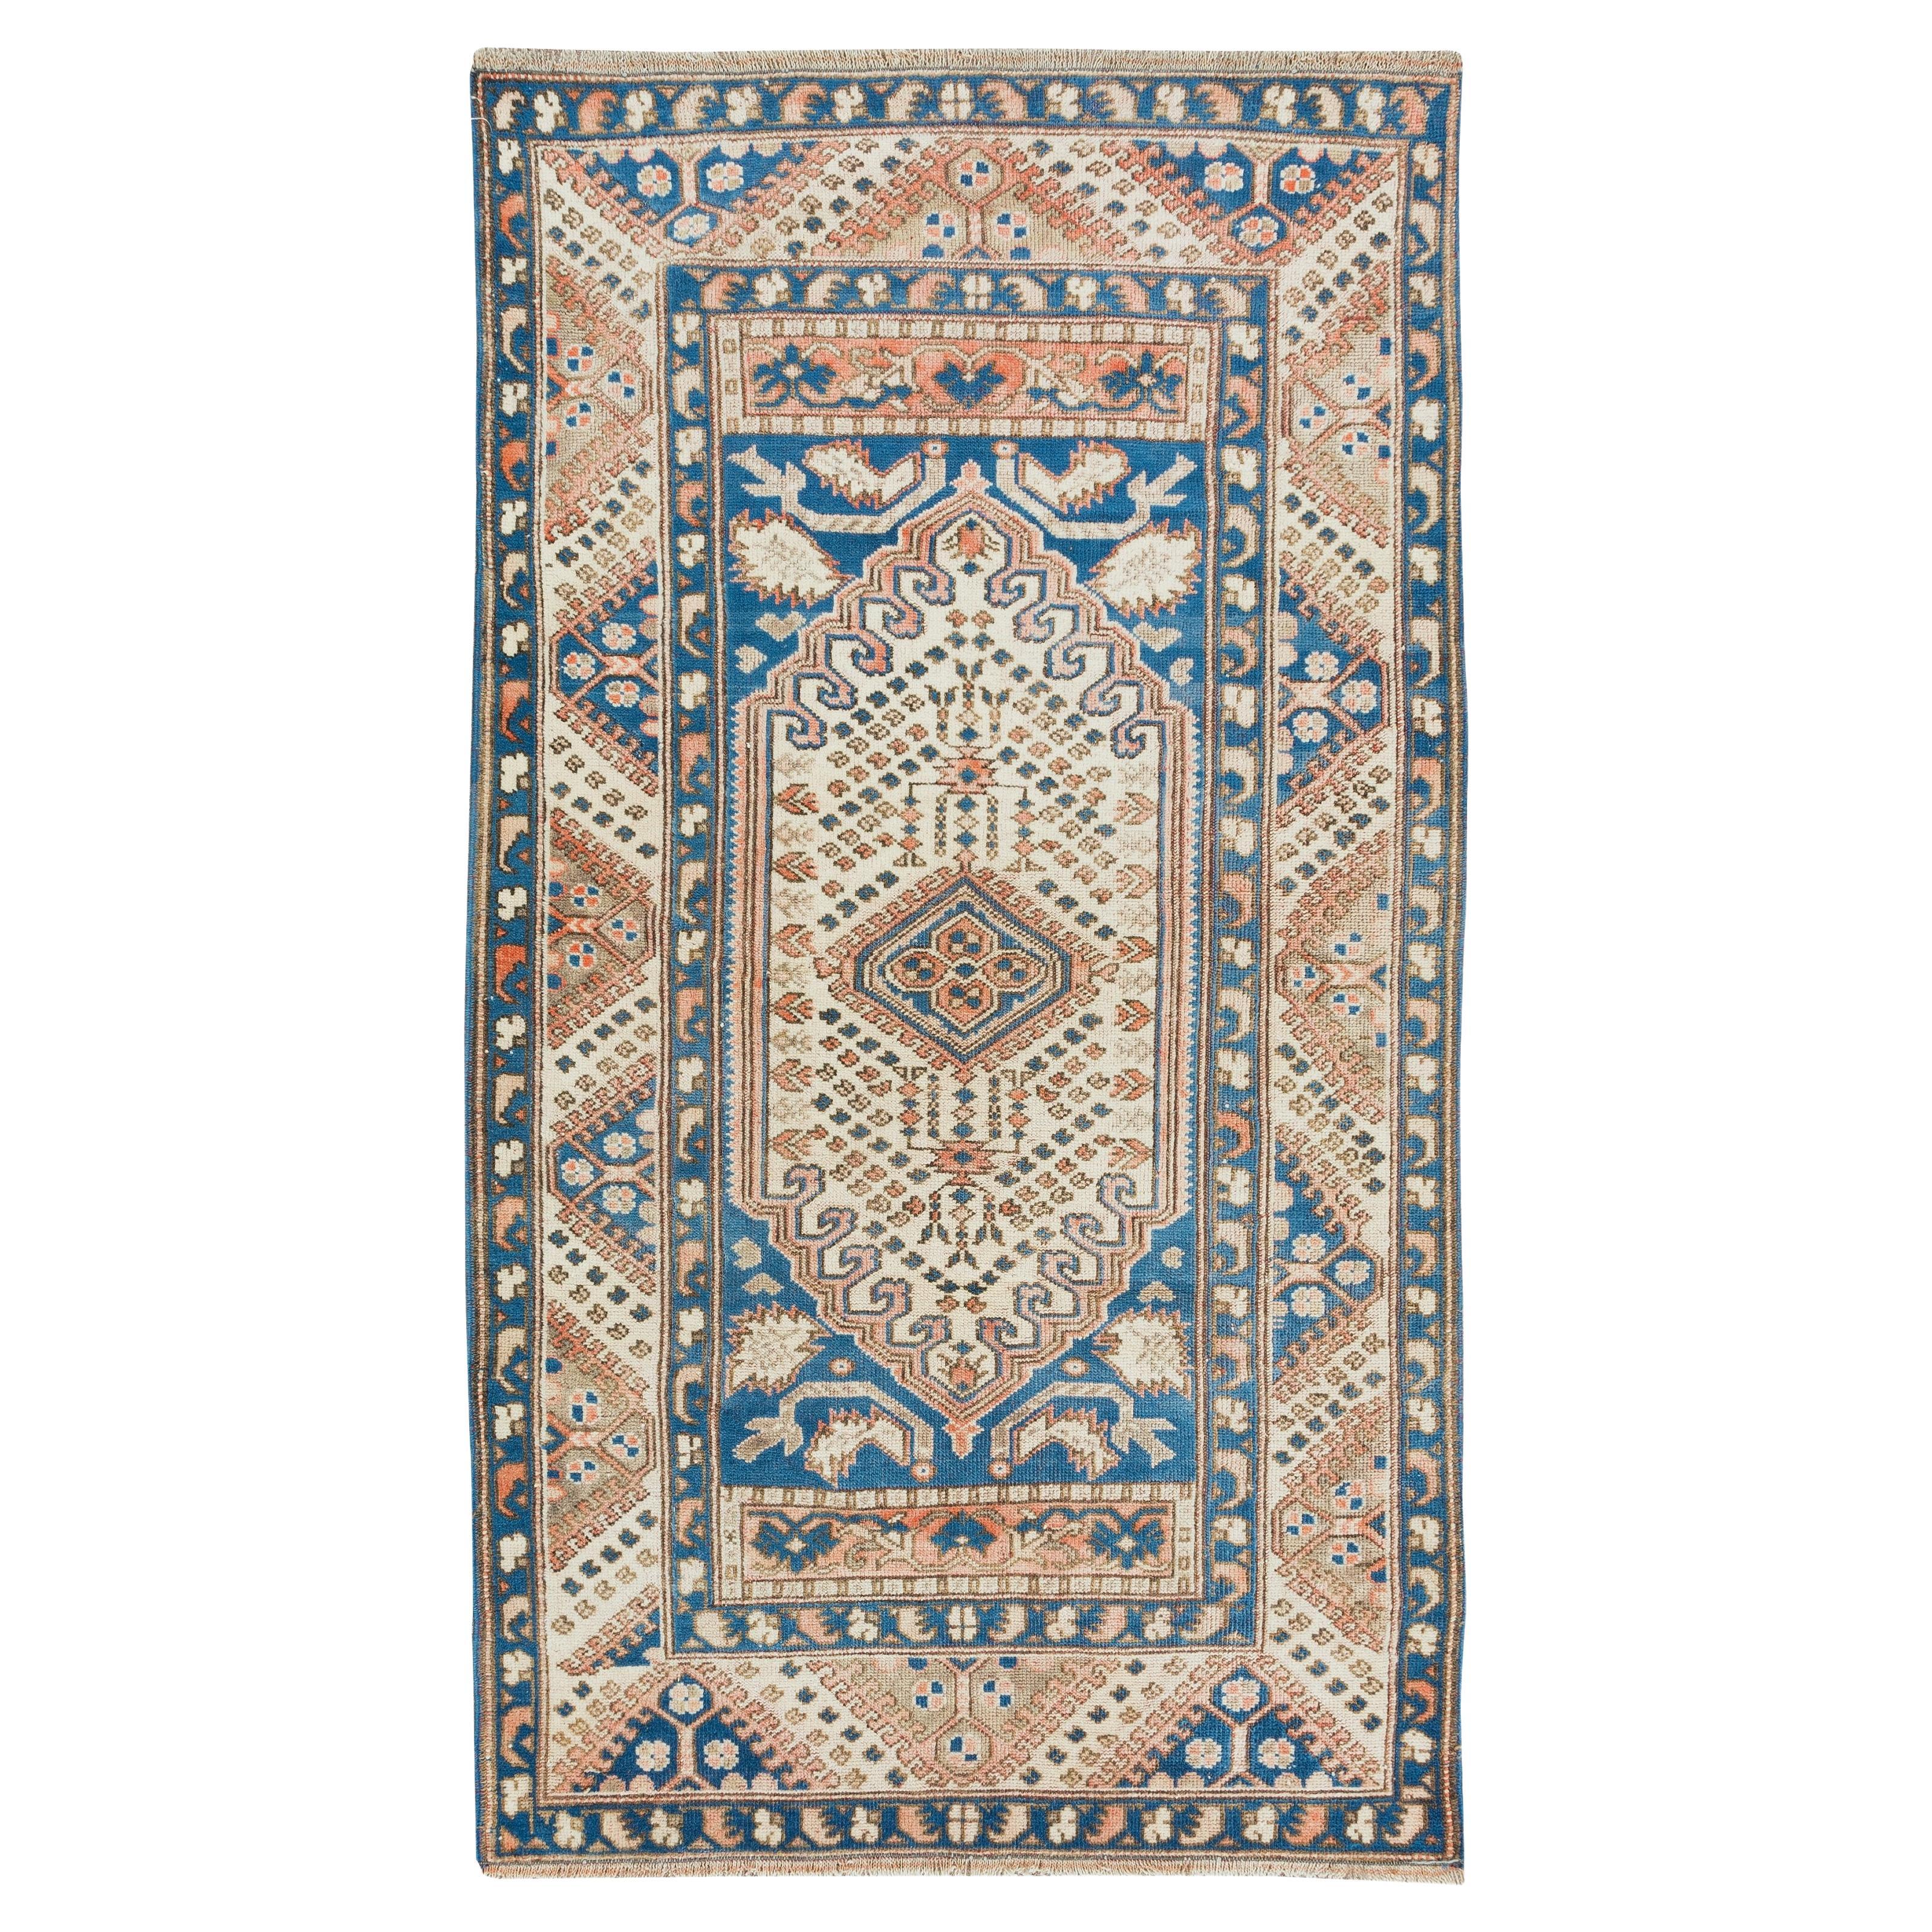 3.4x6.3 Ft Traditioneller geometrischer türkischer Akzentteppich. Handgefertigter Vintage-Teppich